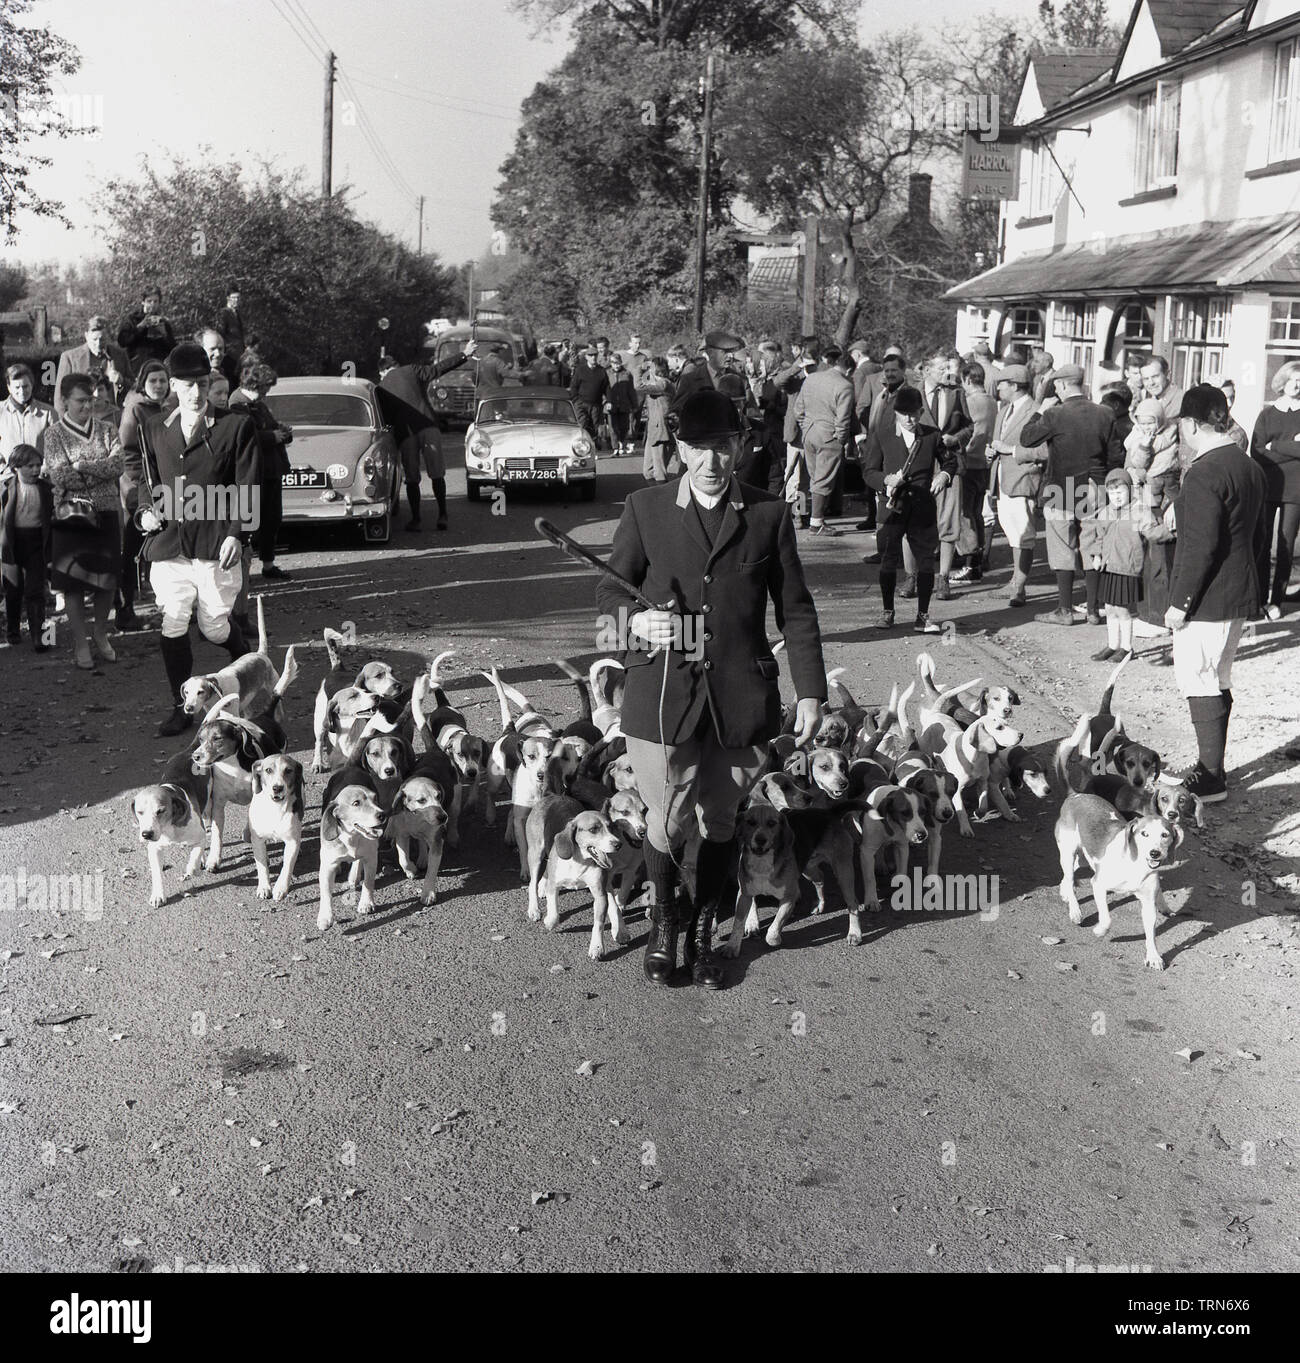 1965, historische, im ländlichen England, lokale treffen sich Leute aus dem Dorf Pub, den Harrow, im Bishopstone, bereit, die Jagd zu folgen, als der Meister von Hunden auf den Weg hinunter die Straße mit einer Packung von Beagle Hunde, Aylesbury, Buckinghamshire, England, UK. Zu dieser Zeit im Besitz der Aylesbury Brewery Company (ABC) die Egge Pub in 2014 geschlossen, das Schicksal von vielen Britischen Dorf Pubs. Stockfoto